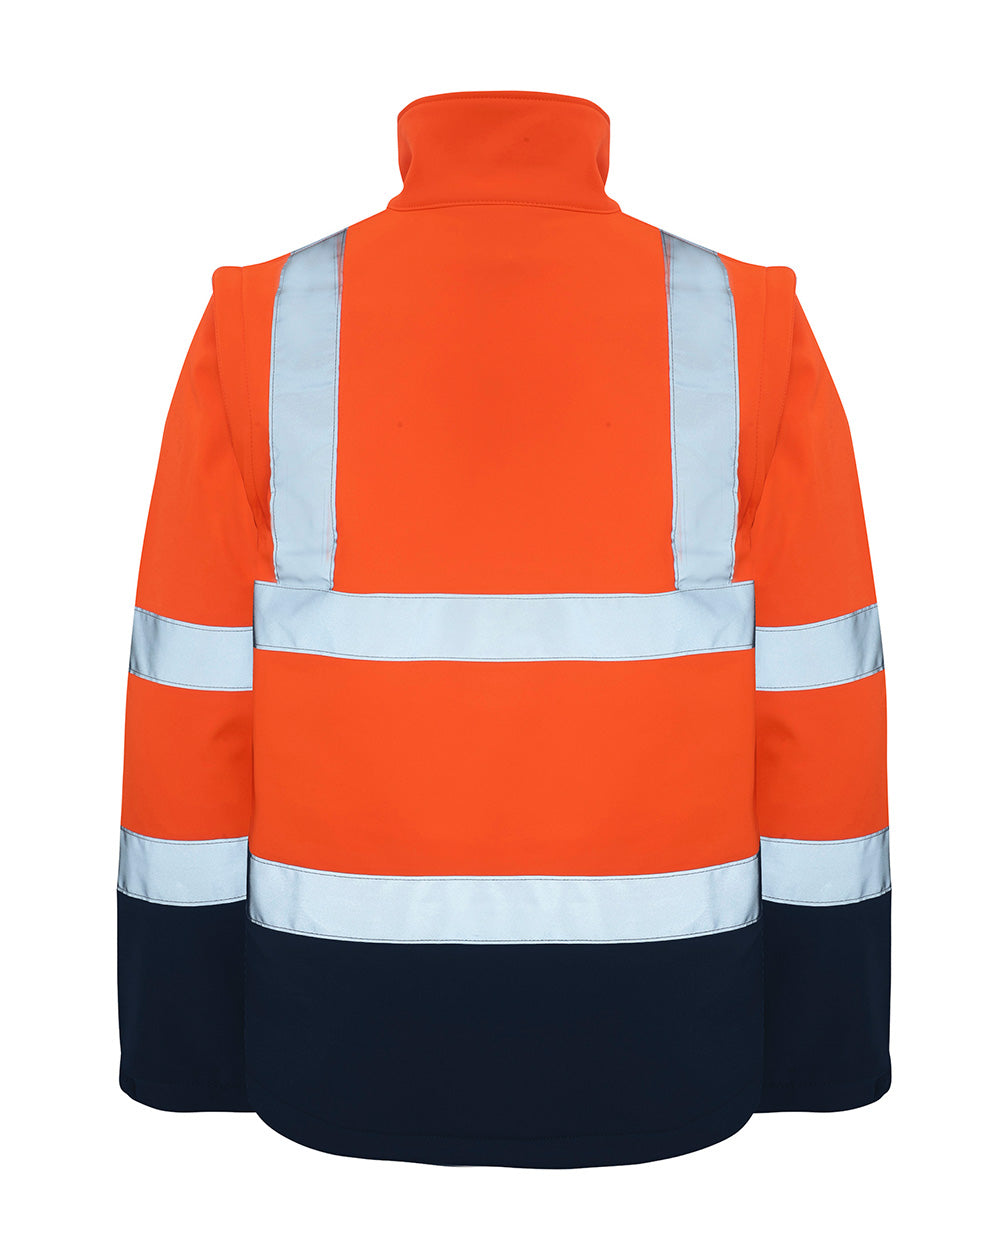 Landy Softshell Jacket in Fluoro Orange & Navy